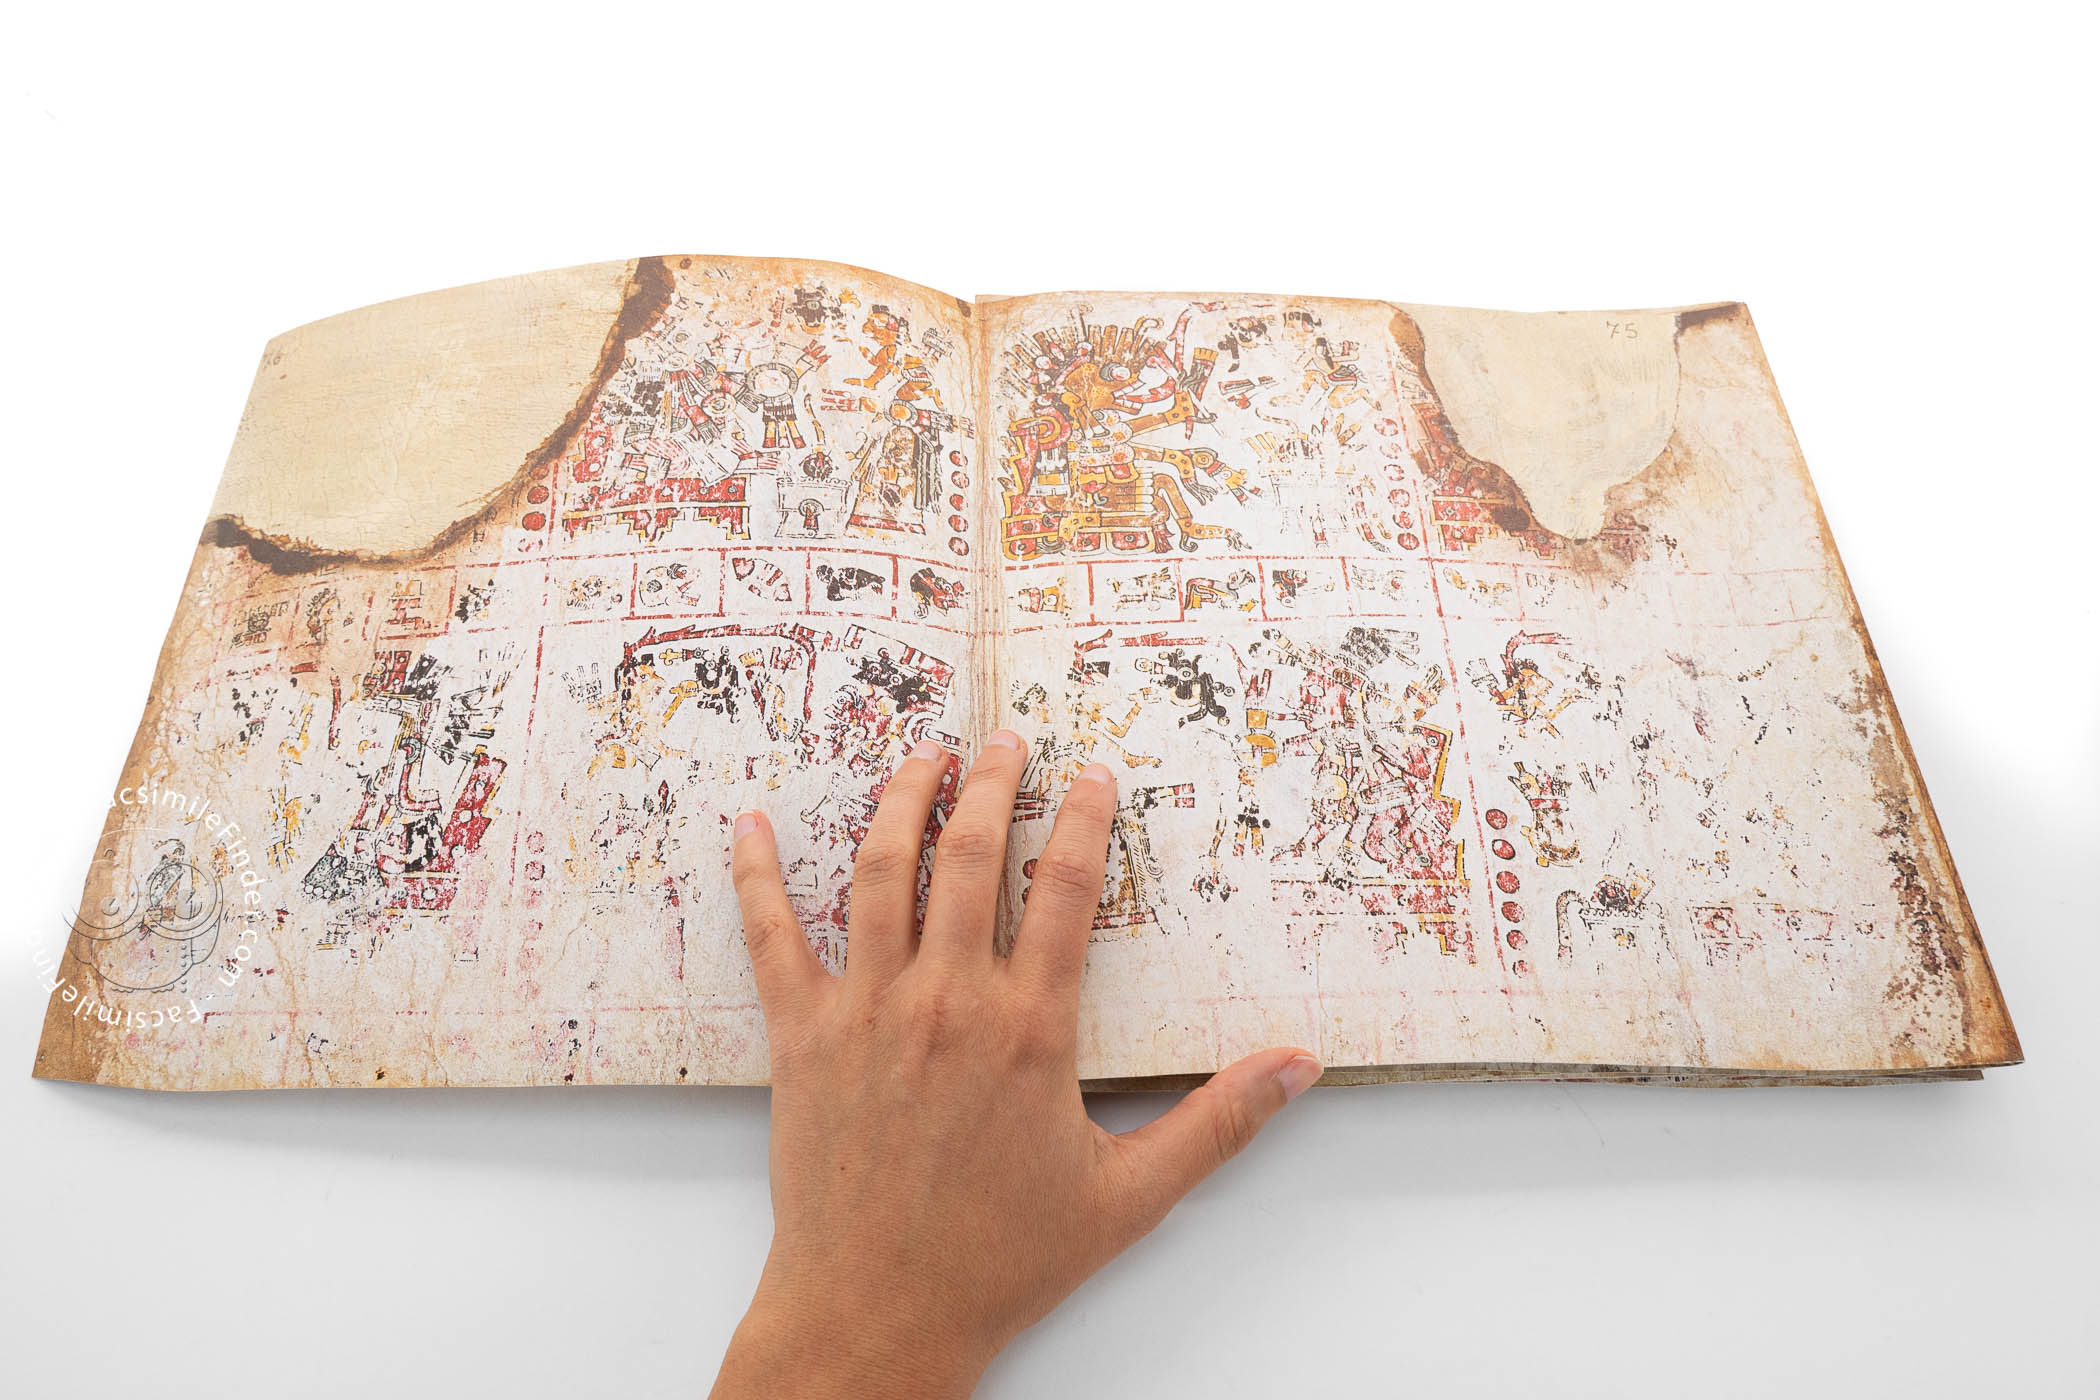 Codex Borgia Facsimile Edition